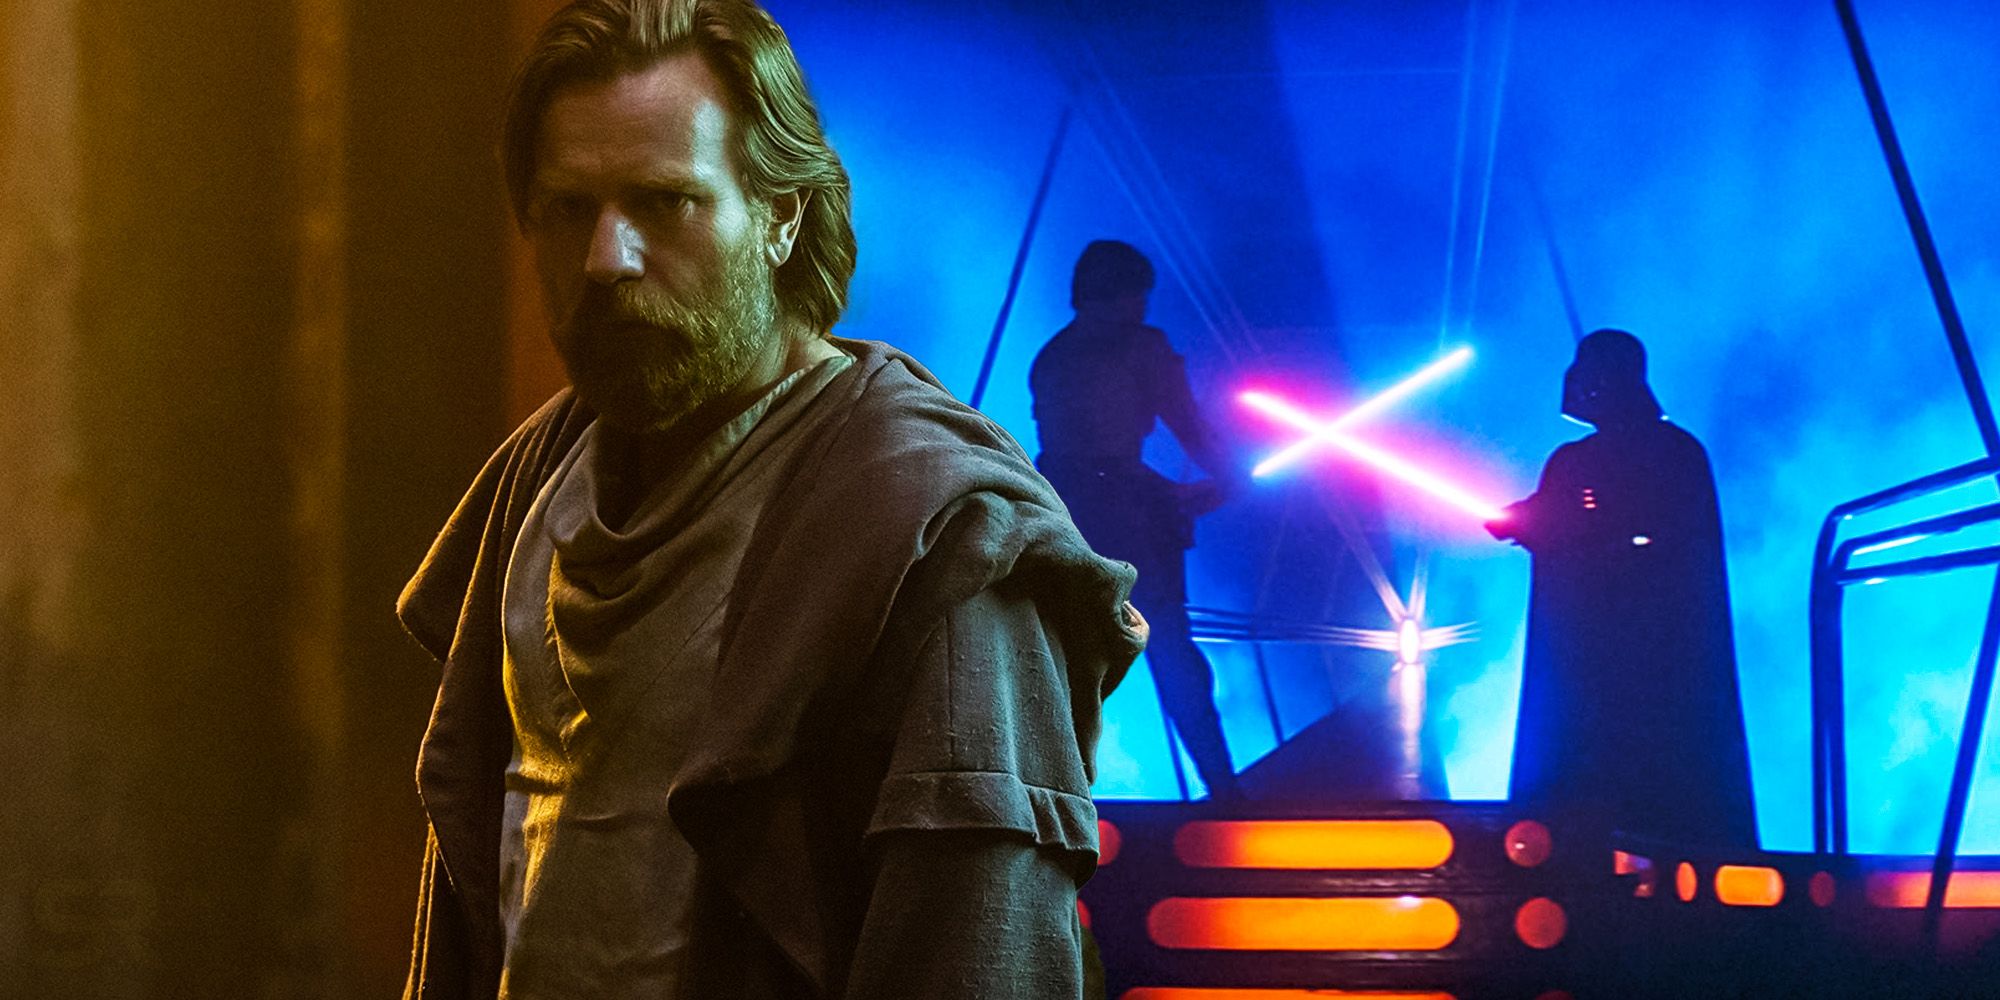 Kenobi Just Explained 1 Part Of Empire Strikes Back’s Luke vs Vader Duel